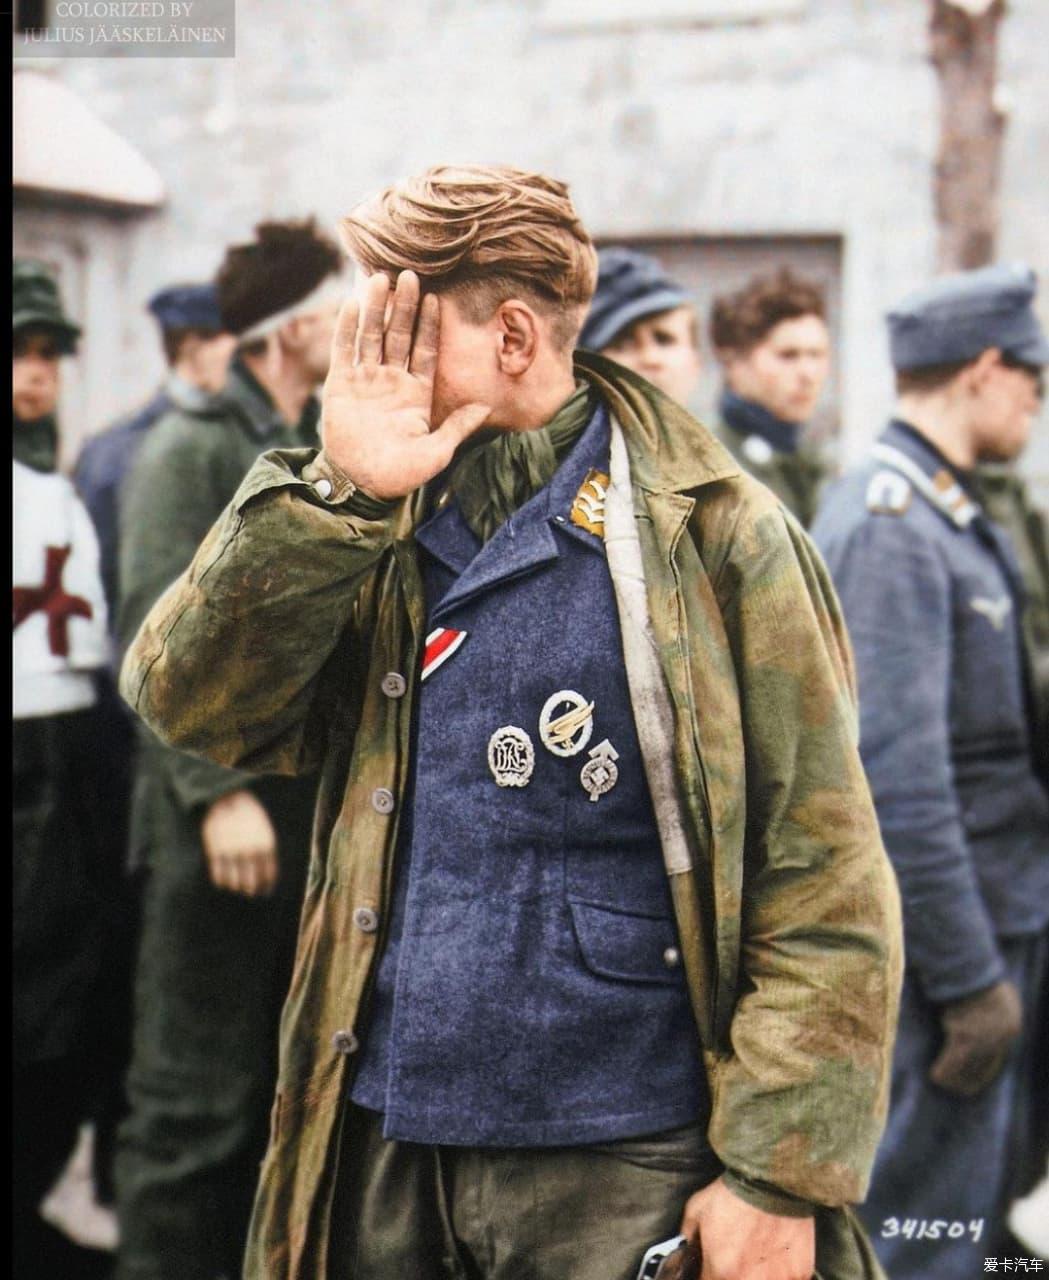 > 1945年1月15日,在比利时韦韦茨,德国伞兵被美国人抓获